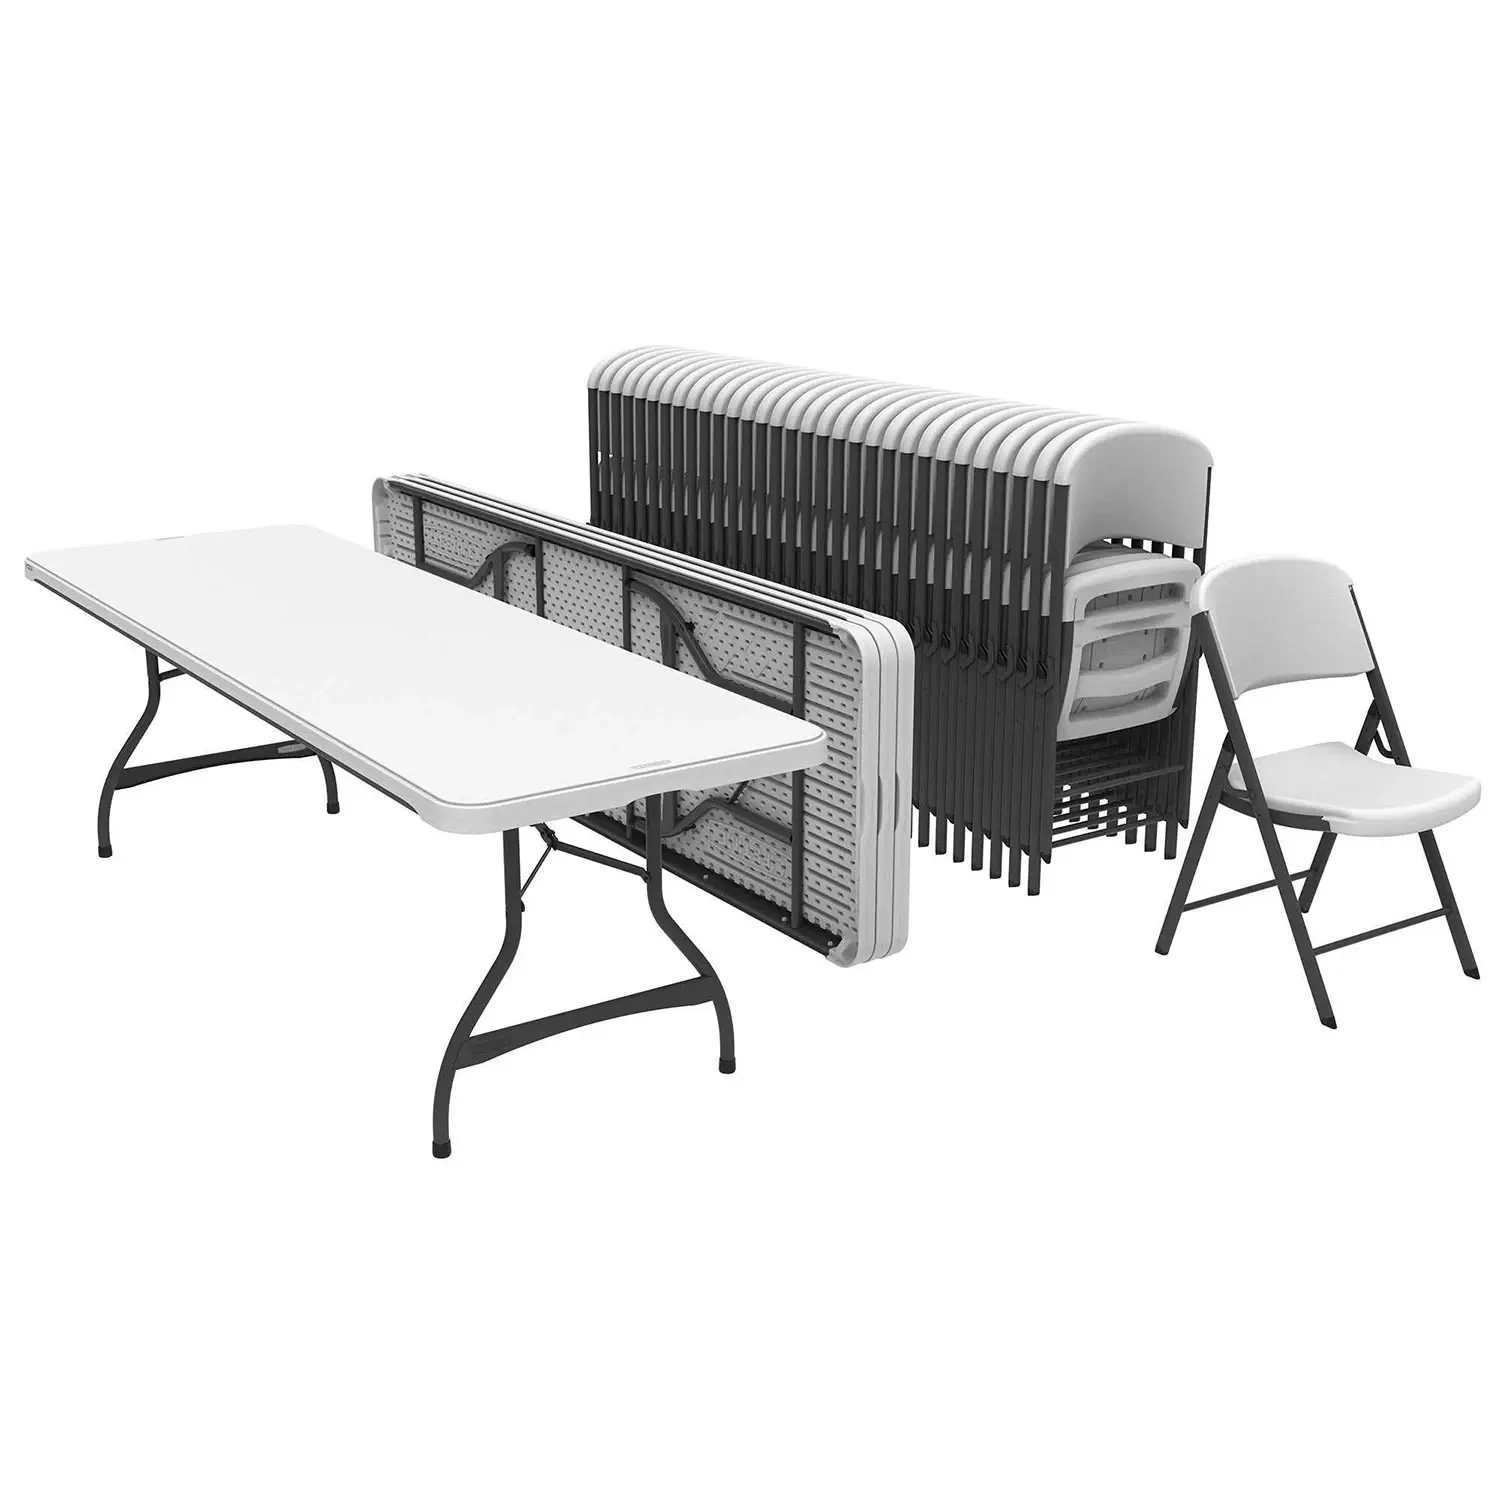 Meja lipat taman, Set kursi dan meja lipat putih plastik 8 kaki 6 kaki berkualitas tinggi untuk acara